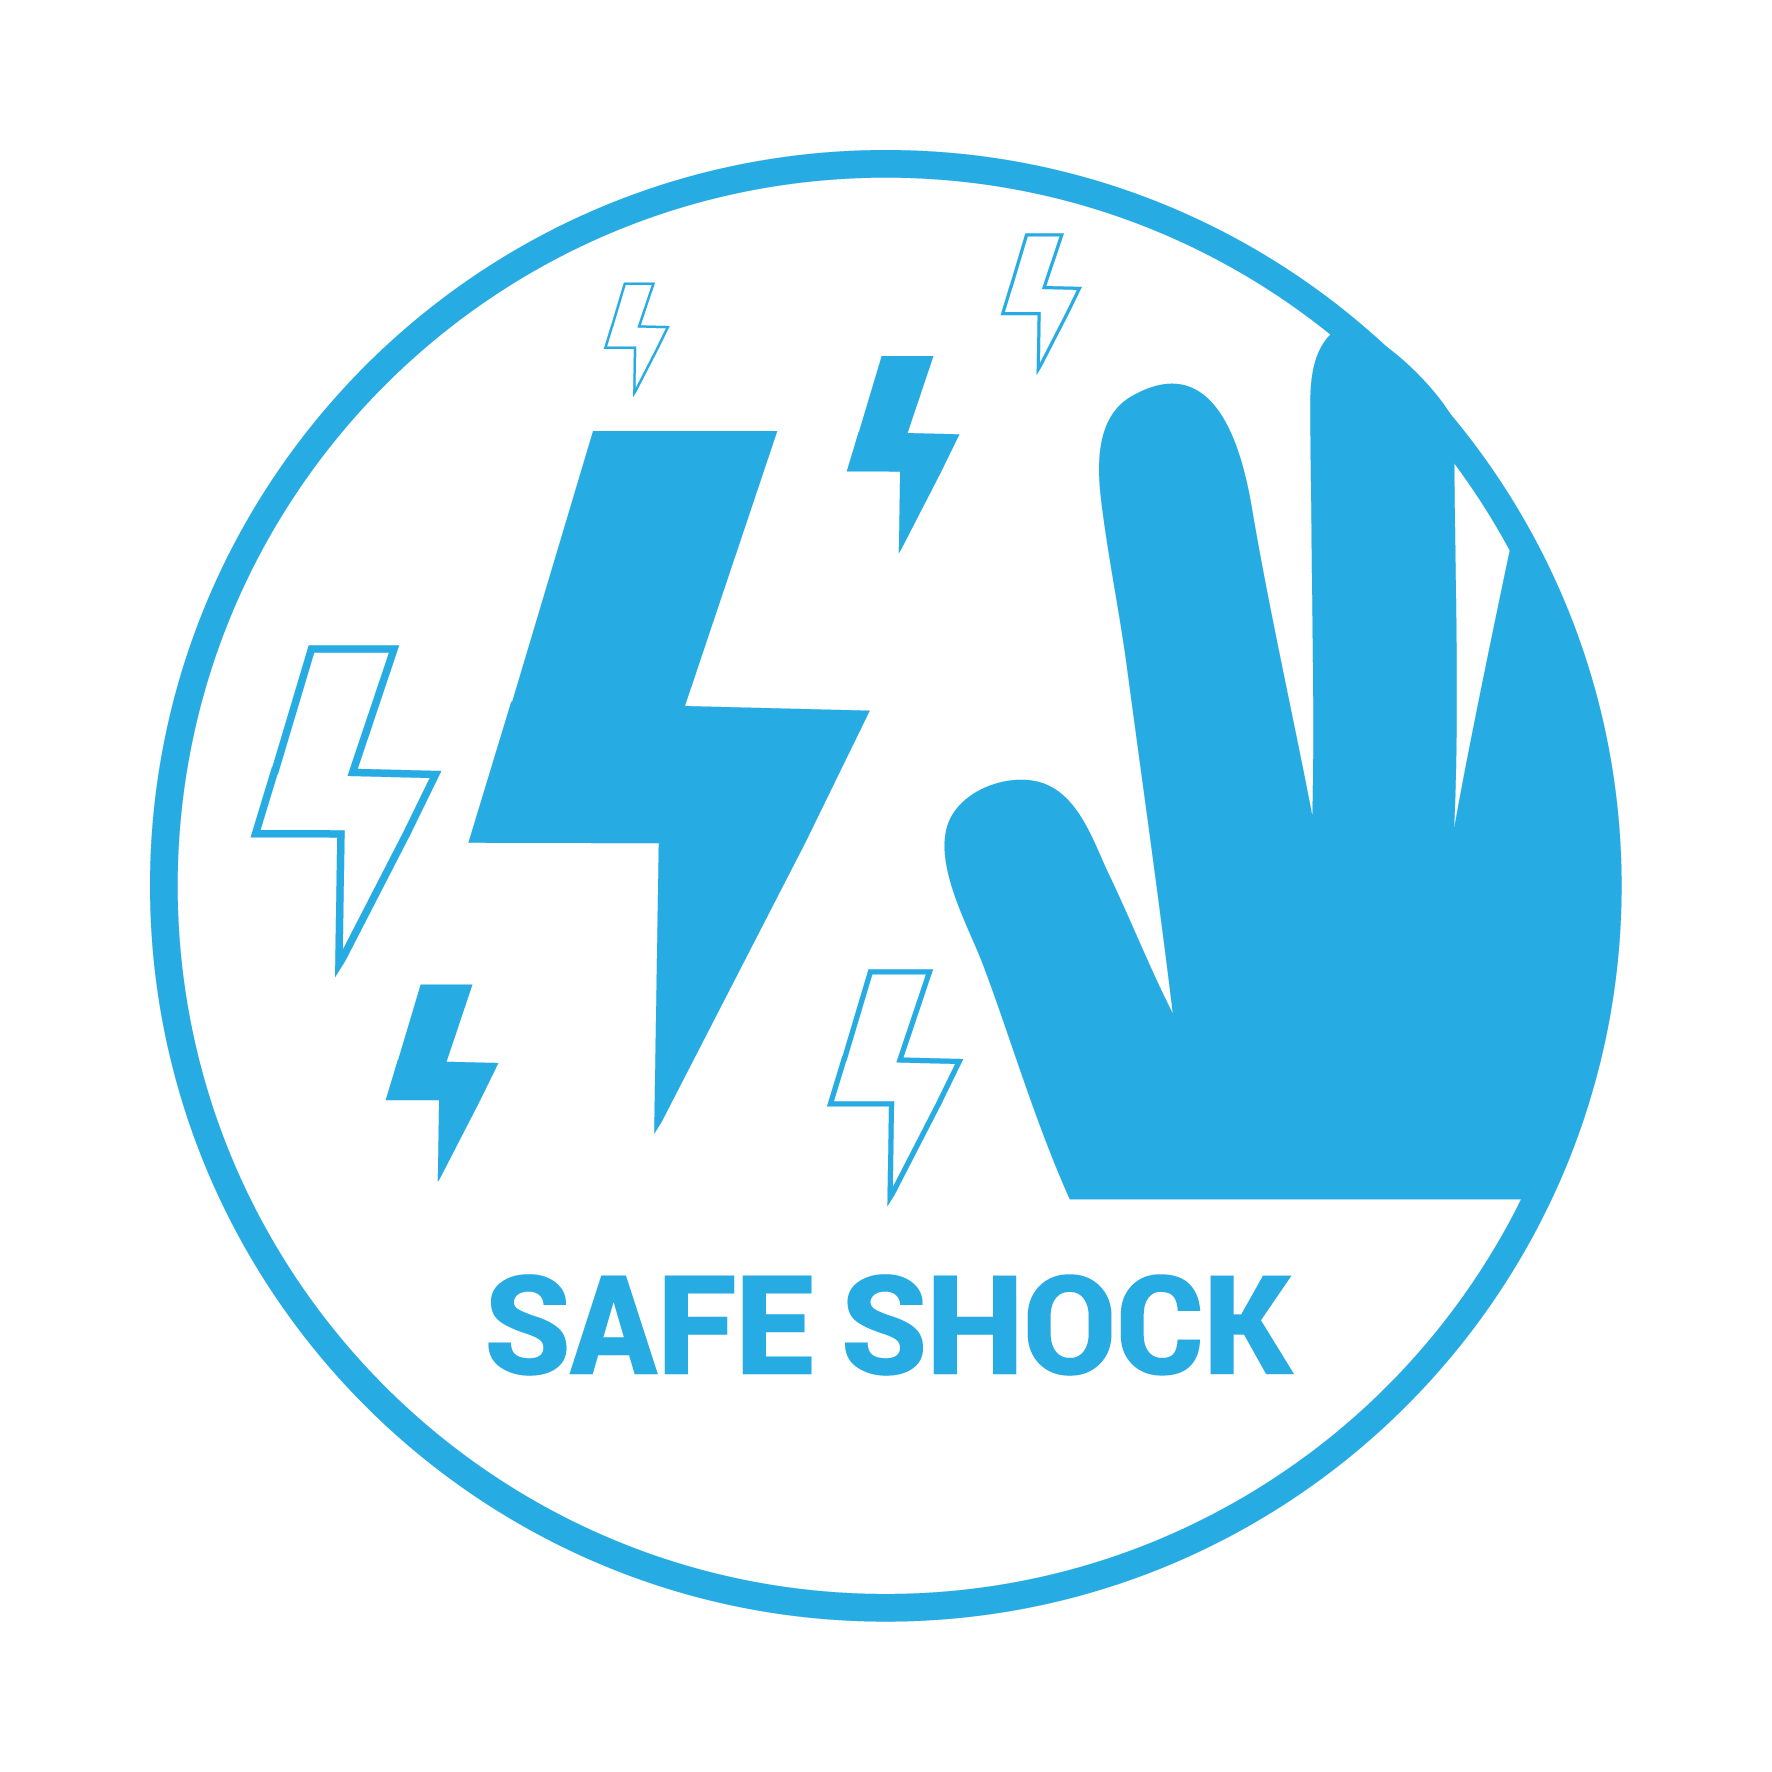 Безопасно (Safe shock)